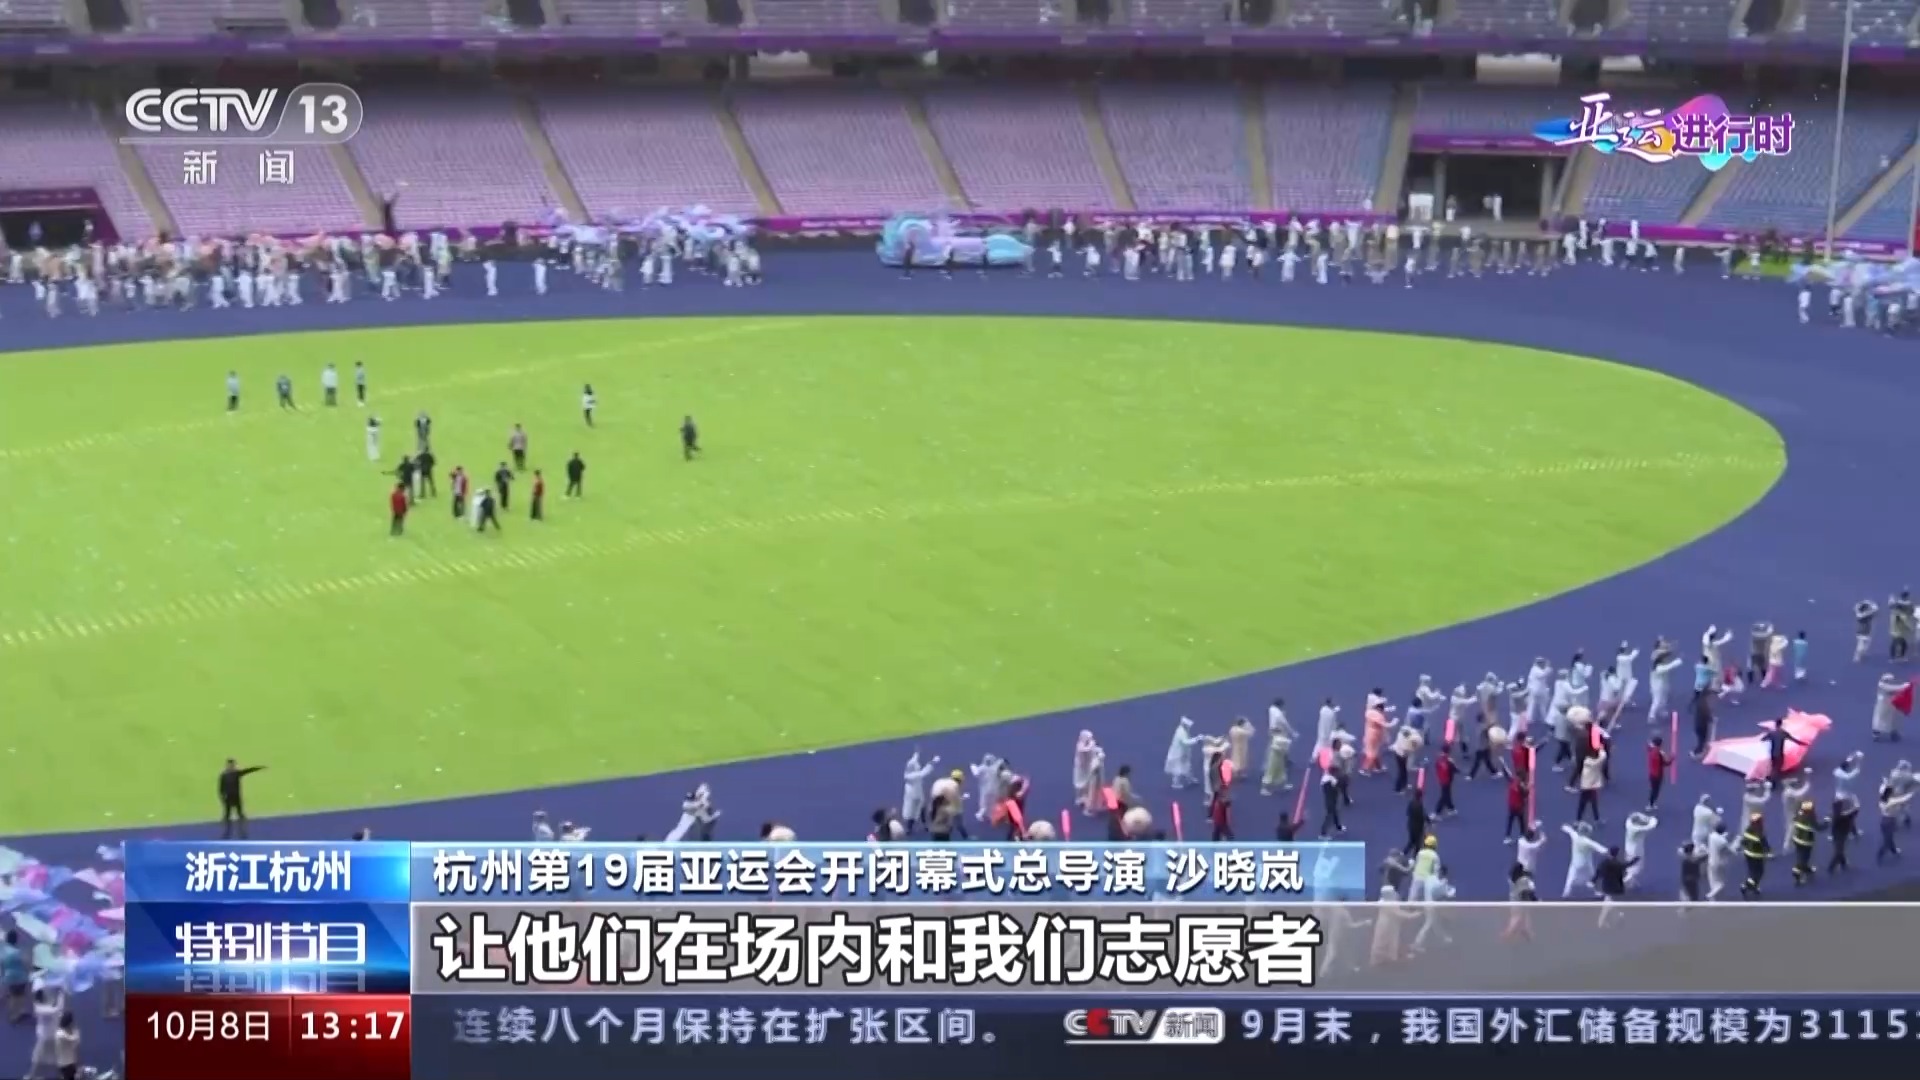 杭州亚运会闭幕式今晚举行 数字火炬手“弄潮儿”将有精彩表现